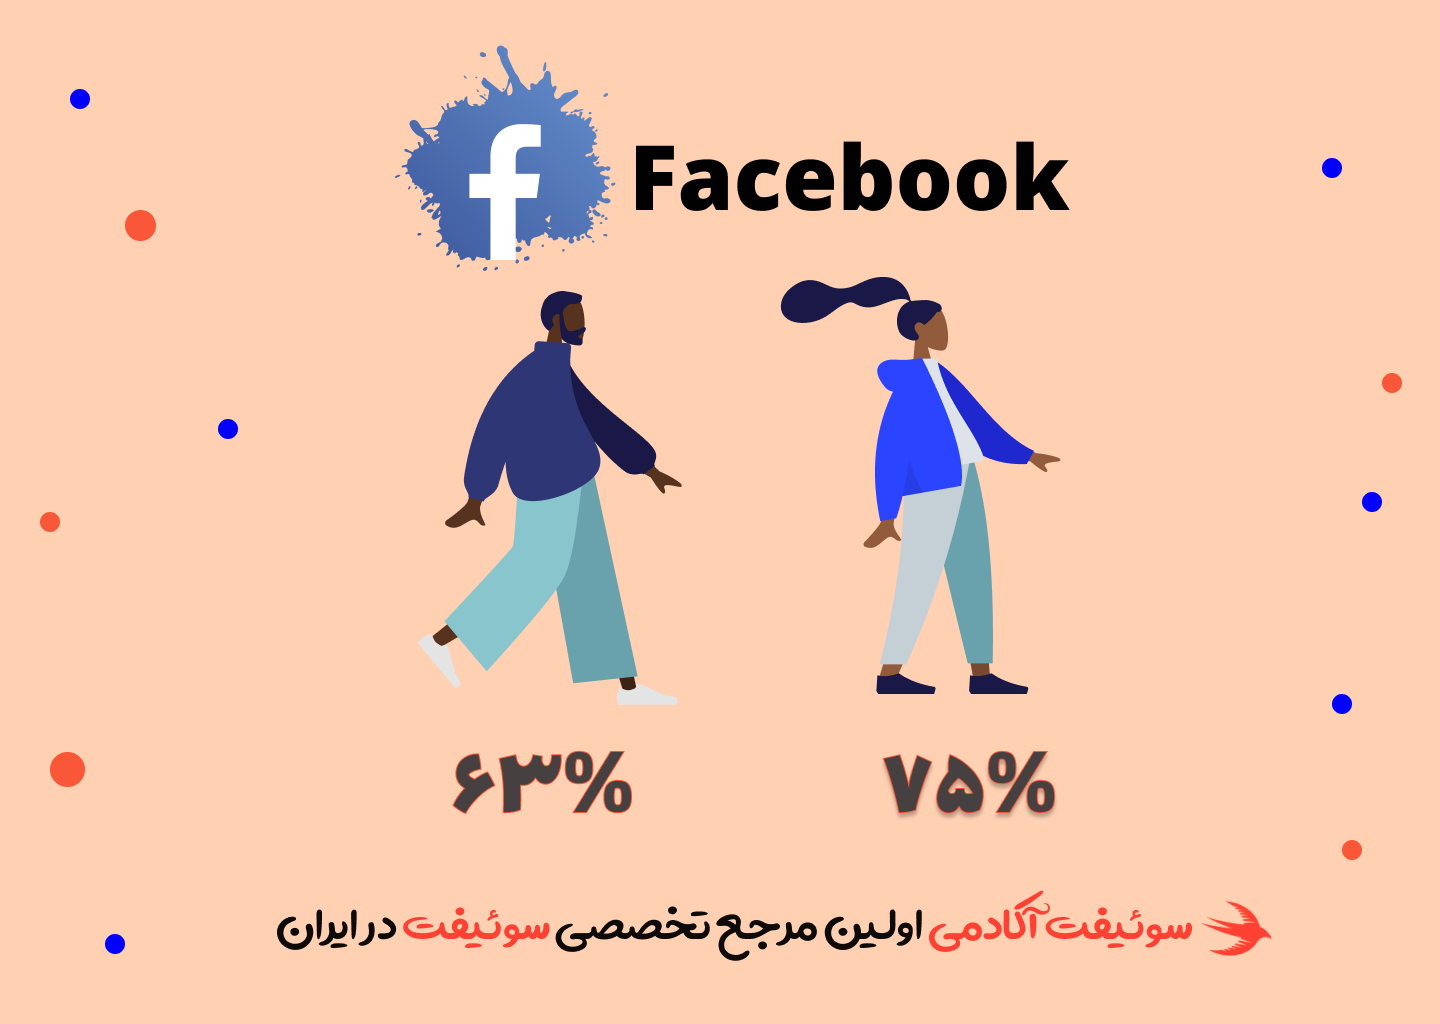 63 درصد از آقایان و 75 درصد از خانم ها از فیسبوک استفاده میکنند.